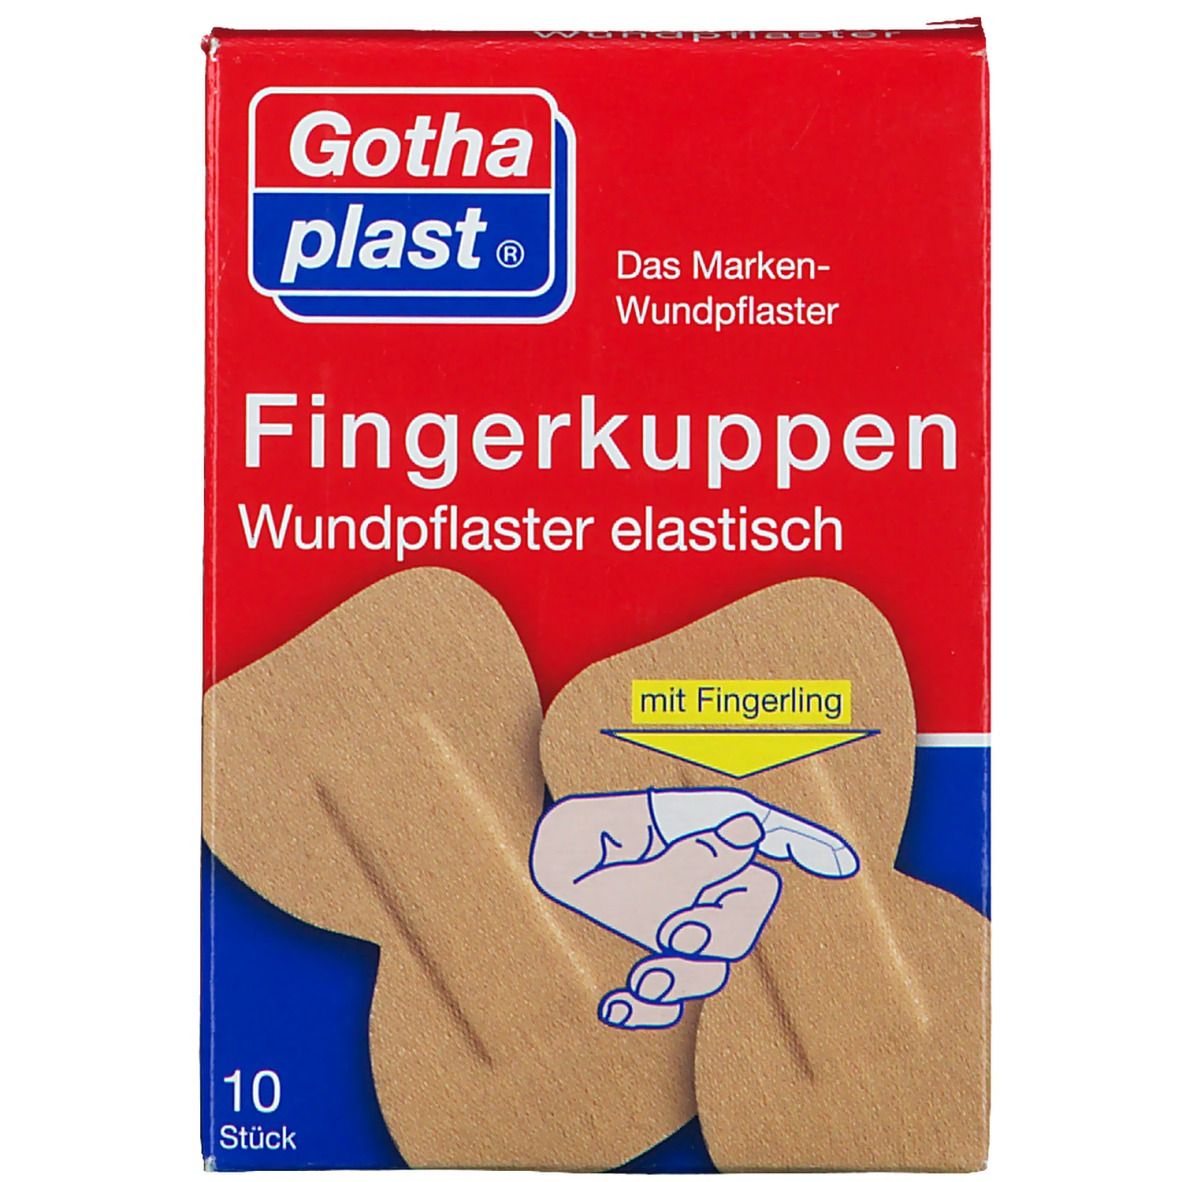 Gothaplast® Fingerkuppenpflaster mit Fingerling 10 St - SHOP APOTHEKE